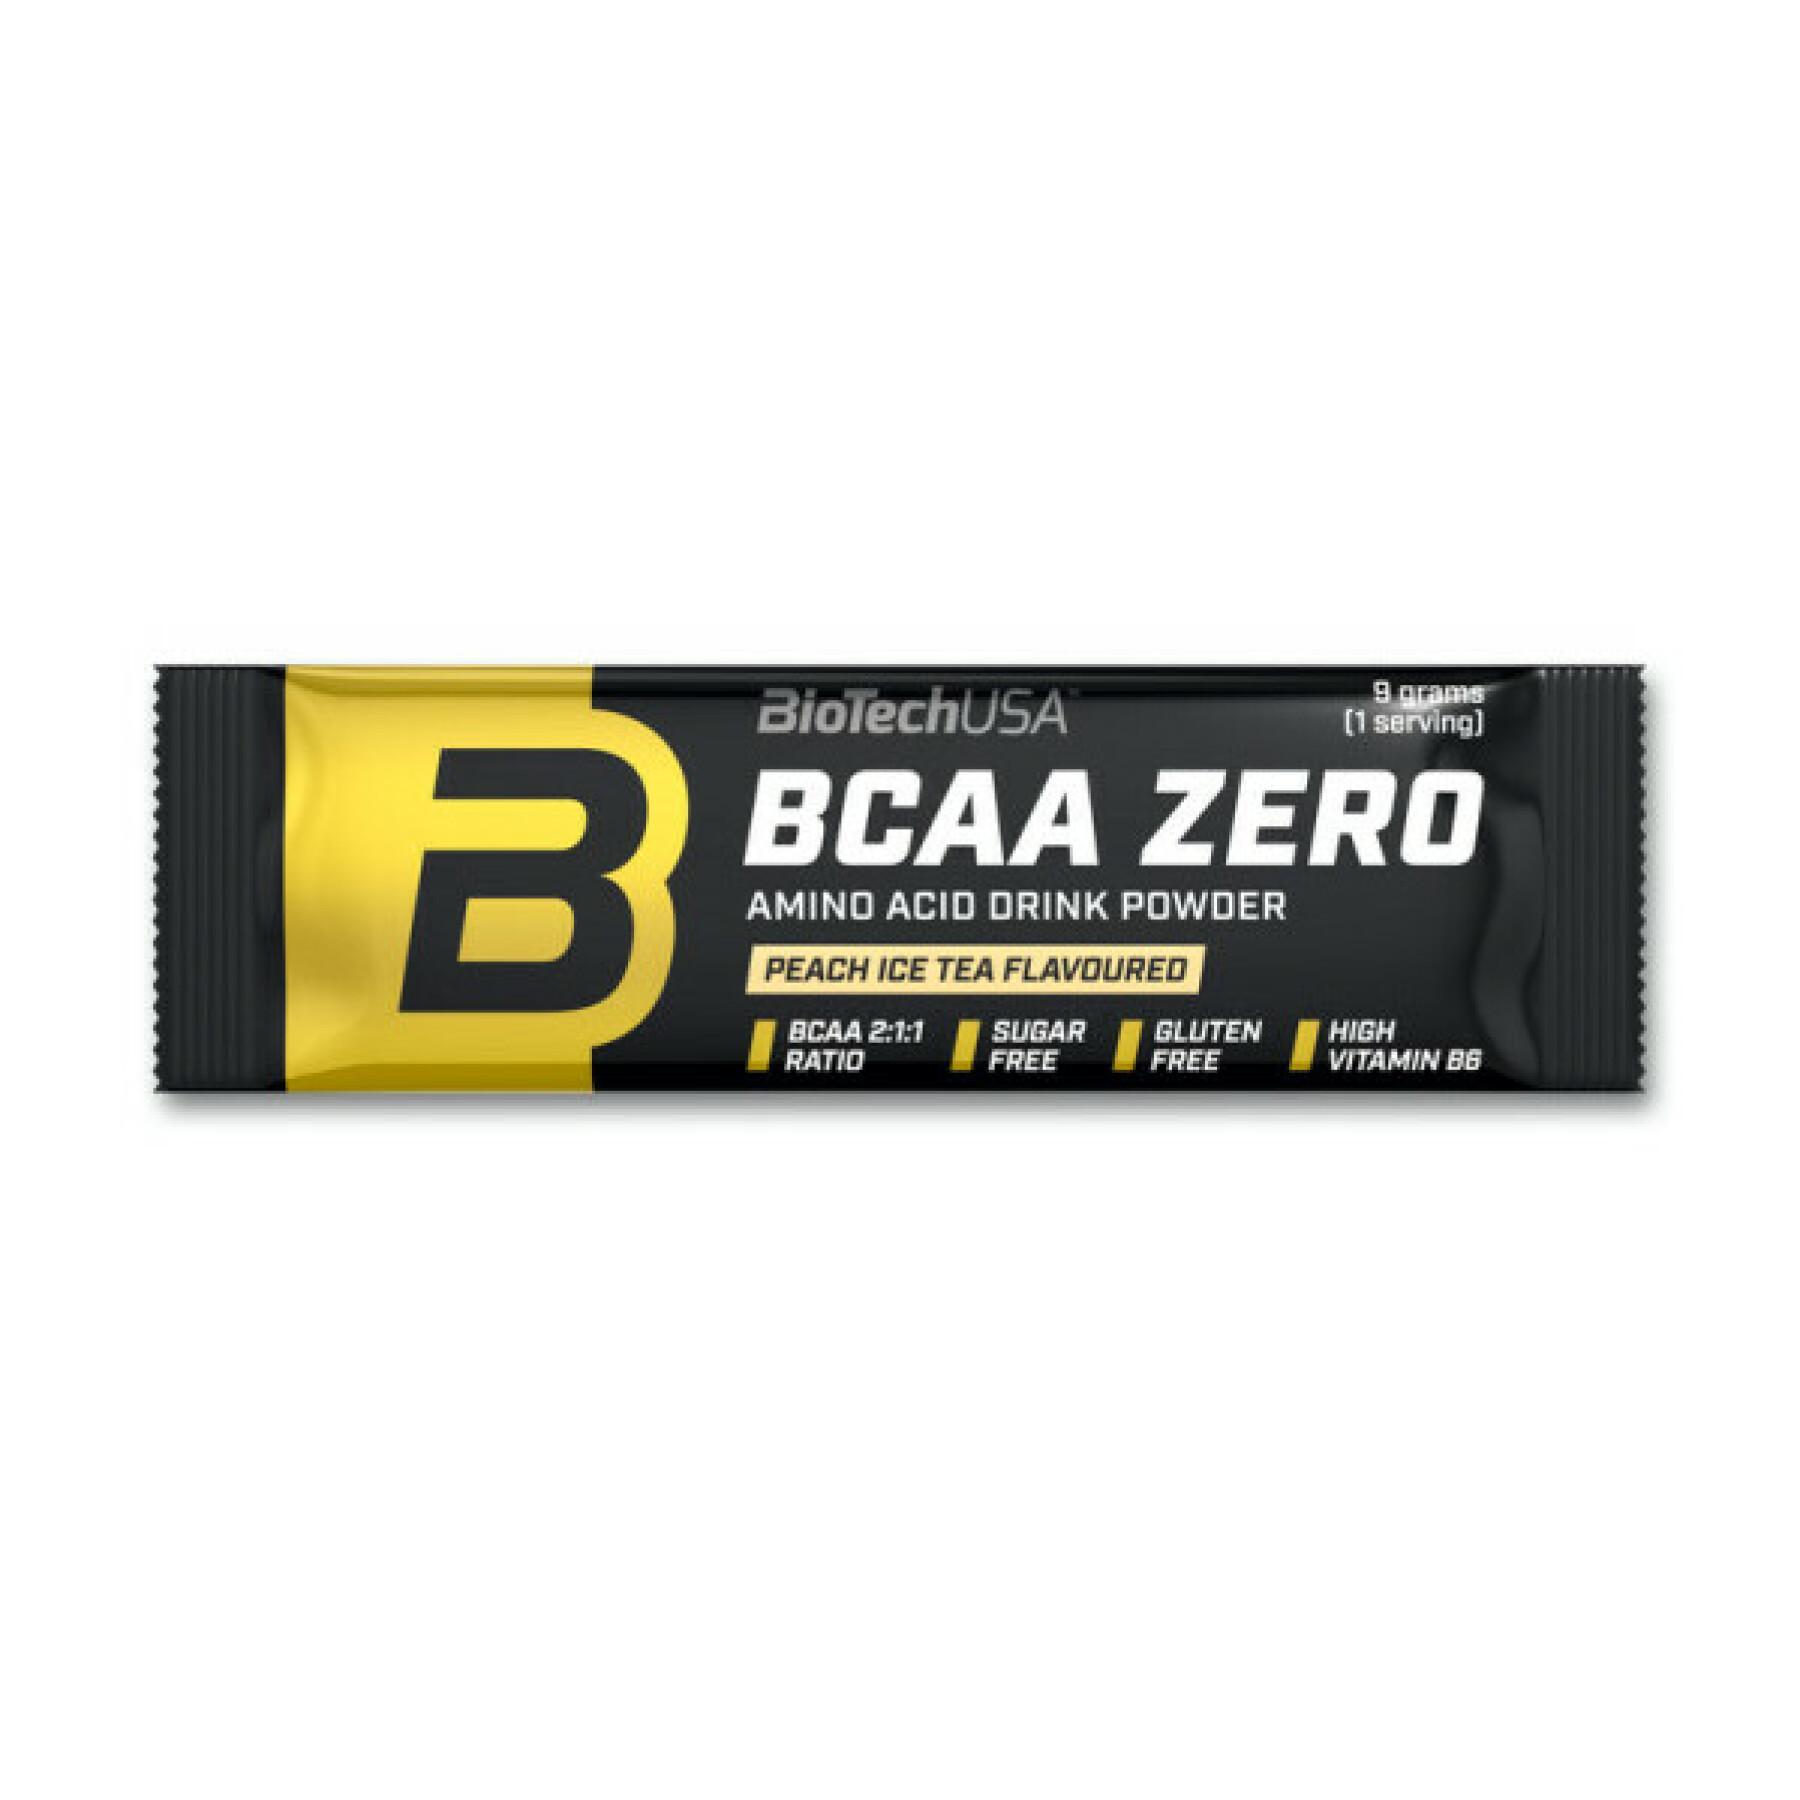 50 pacotes de aminoácidos Biotech USA bcaa zero - Cola - 9g